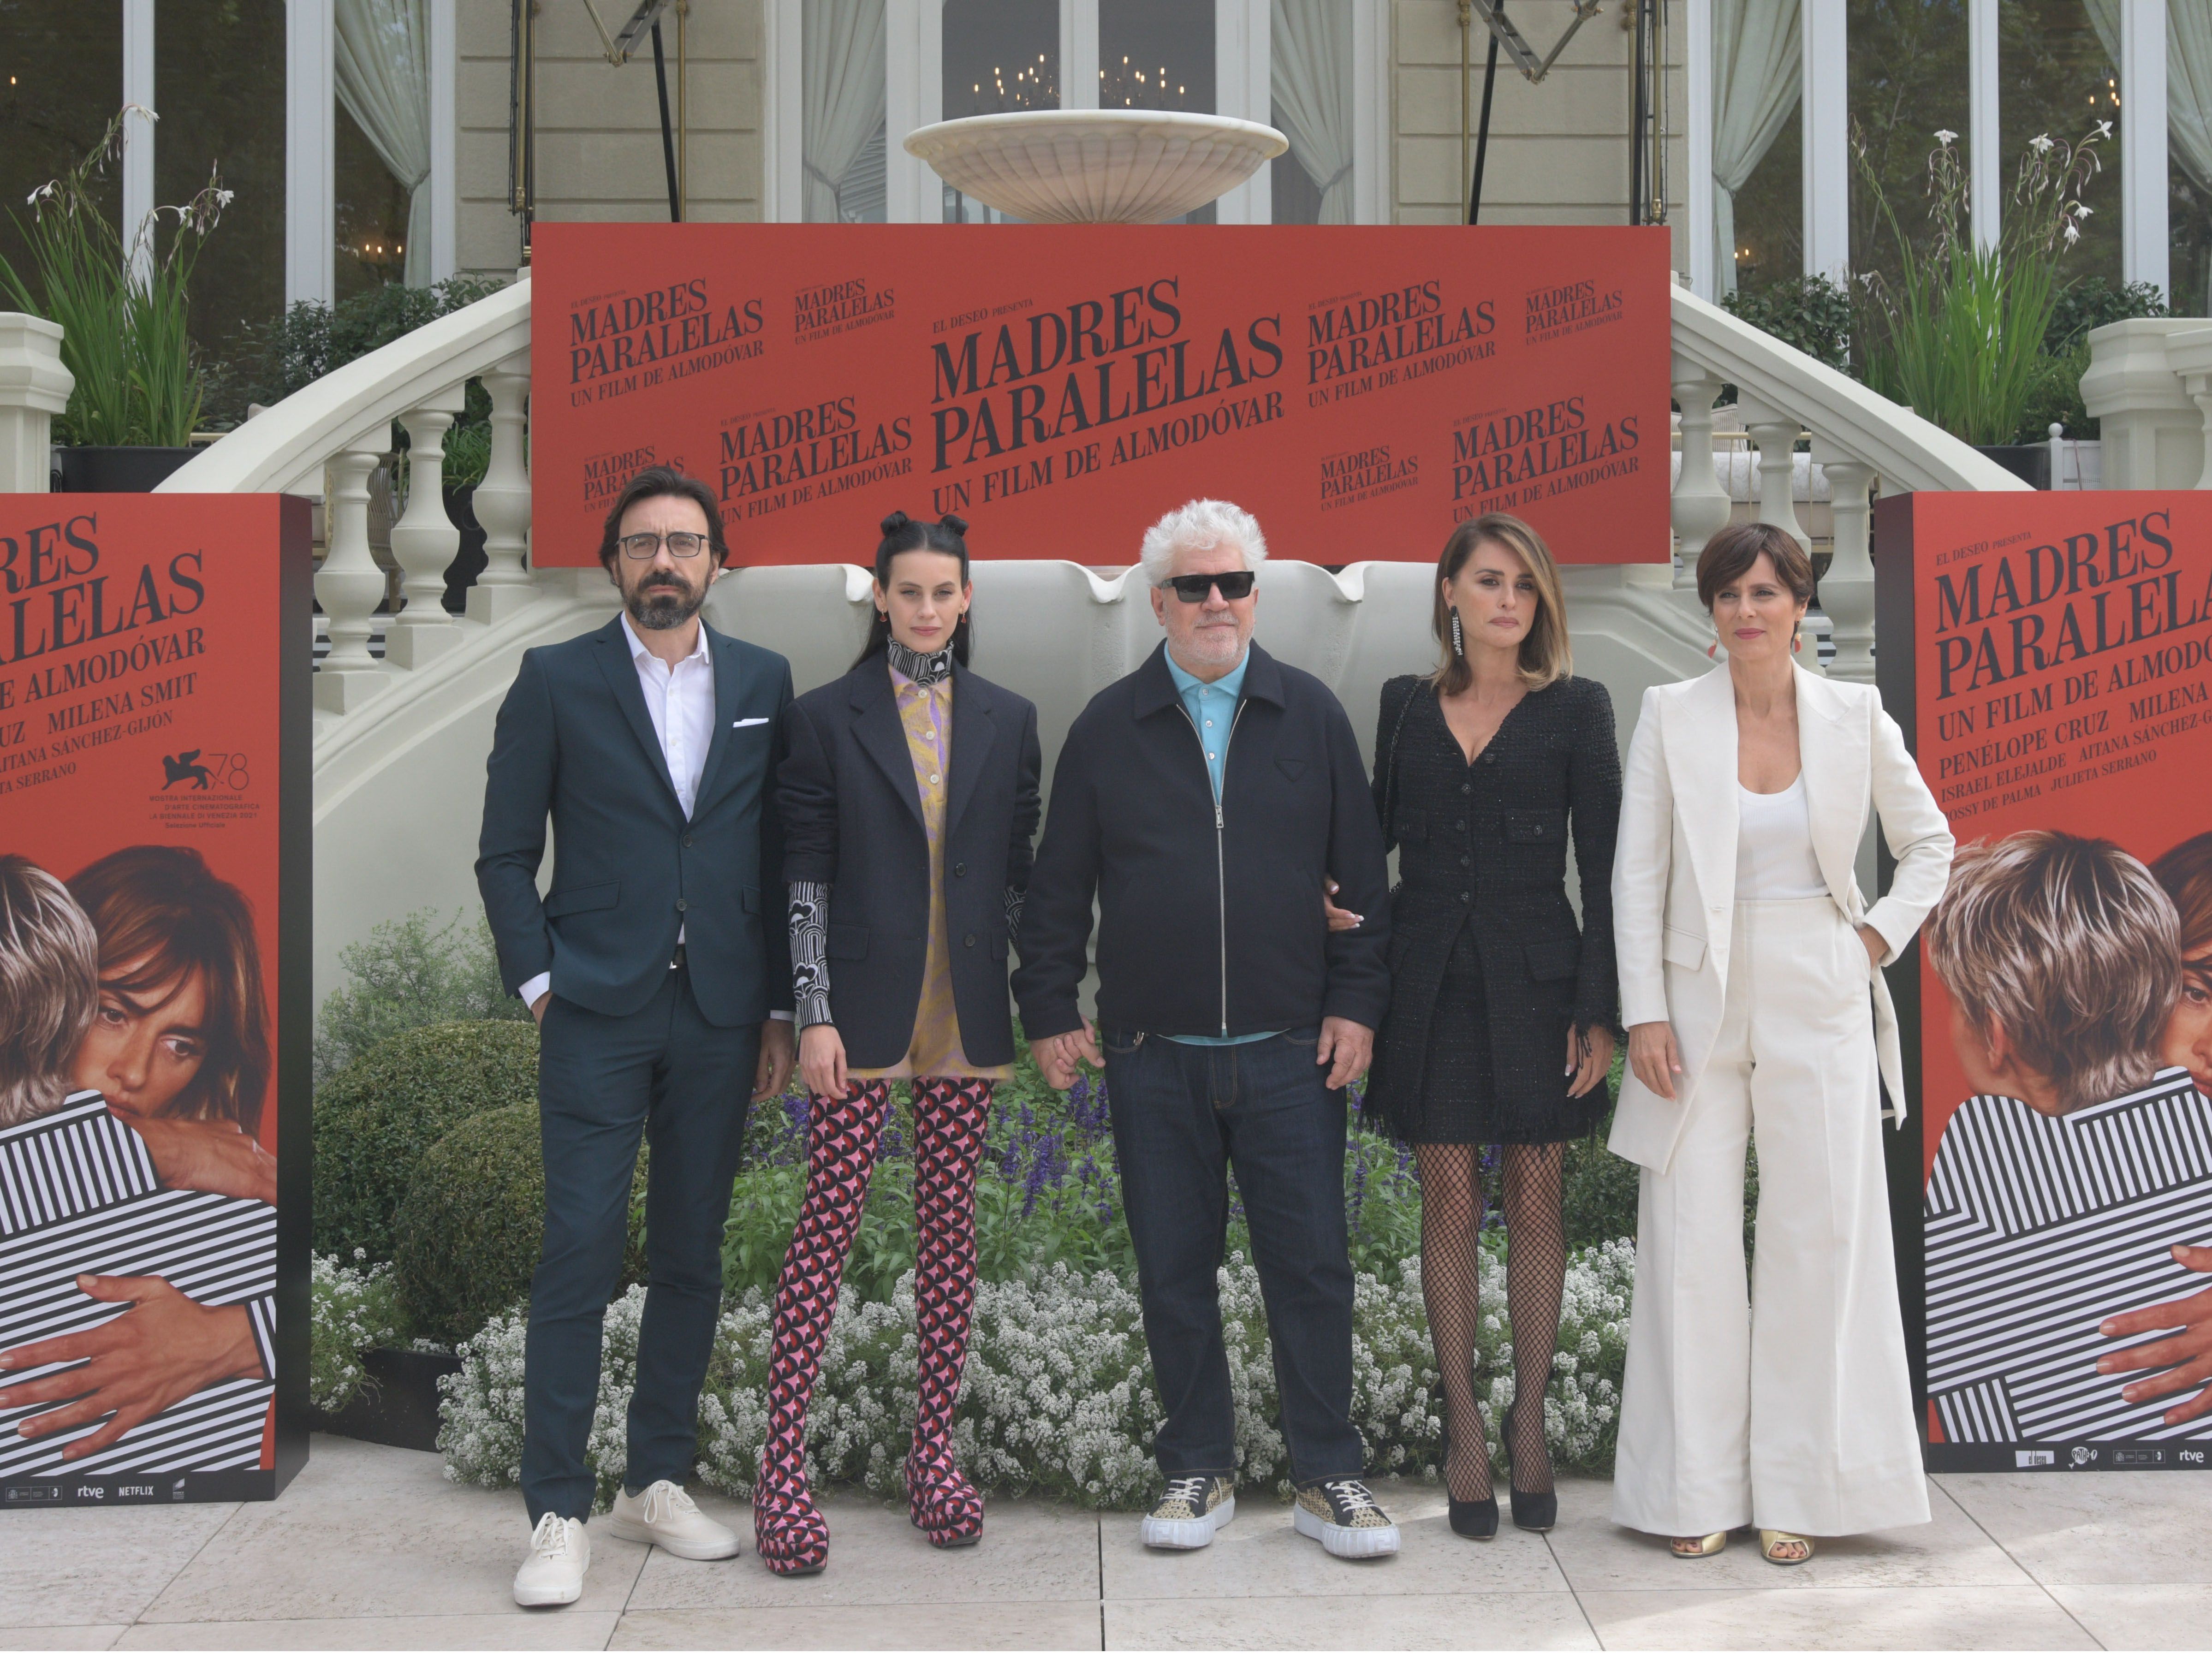 04-10-2021 Photocall de 'Madres paralelas' en Madrid, con la presencia de Pedro Almodóvar y de los protagonistas de la cinta EUROPA ESPAÑA SOCIEDAD 